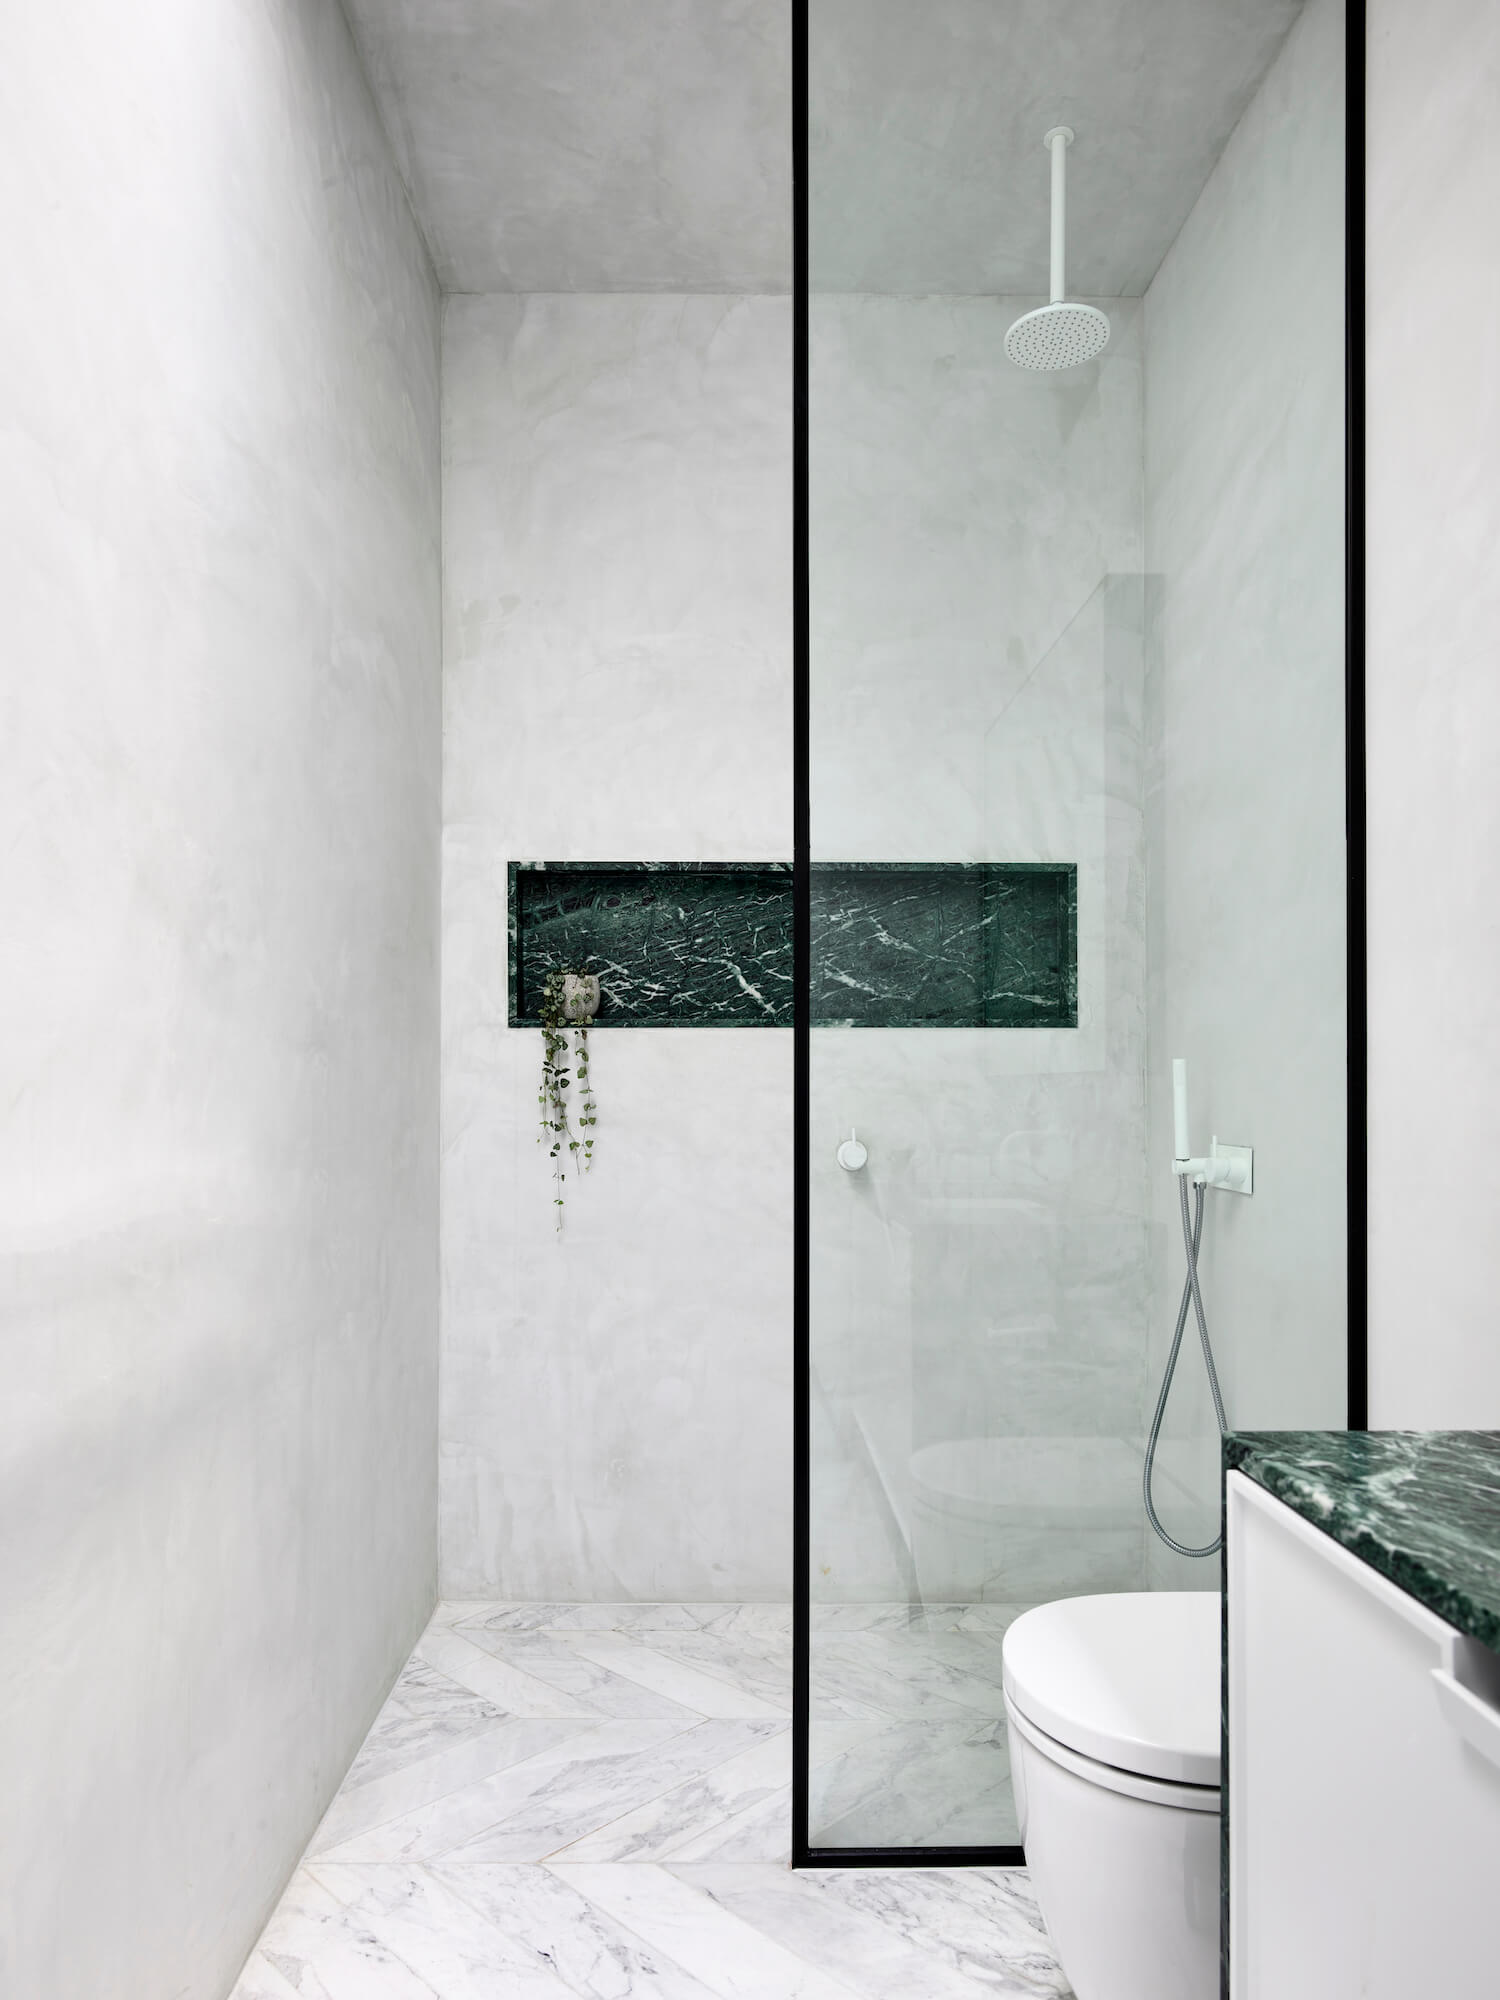 Badrumsinspiration - Snyggt badrum med tadelakt, grön marmor som detalj och vit marmor i chevron på golvet.